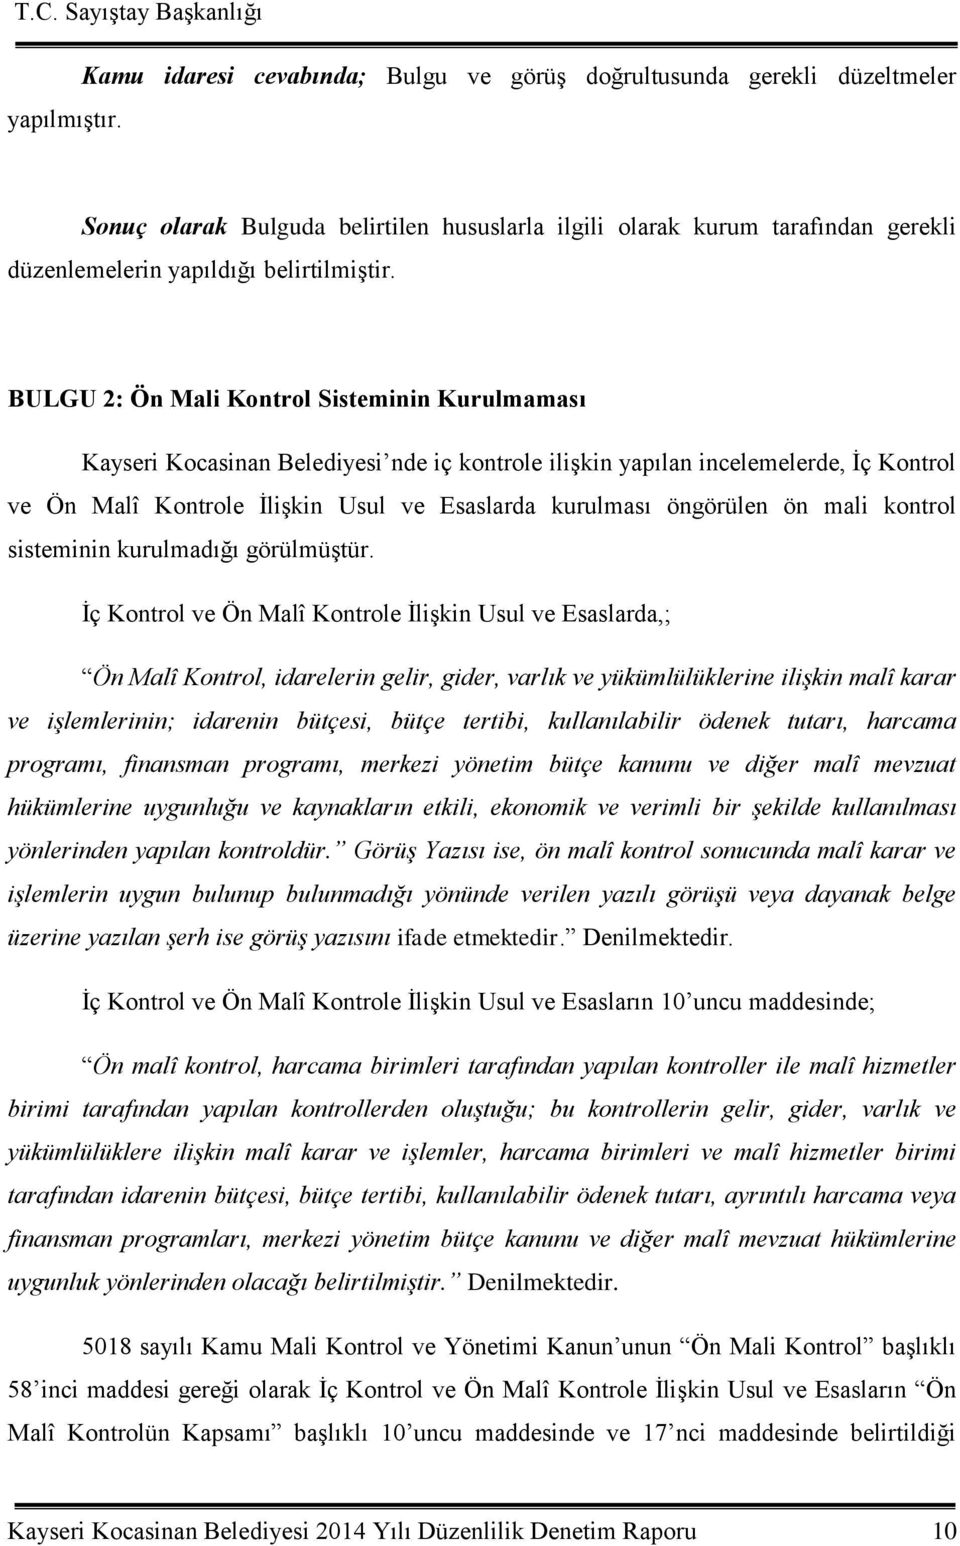 BULGU 2: Ön Mali Kontrol Sisteminin Kurulmaması Kayseri Kocasinan Belediyesi nde iç kontrole iliģkin yapılan incelemelerde, Ġç Kontrol ve Ön Malî Kontrole ĠliĢkin Usul ve Esaslarda kurulması